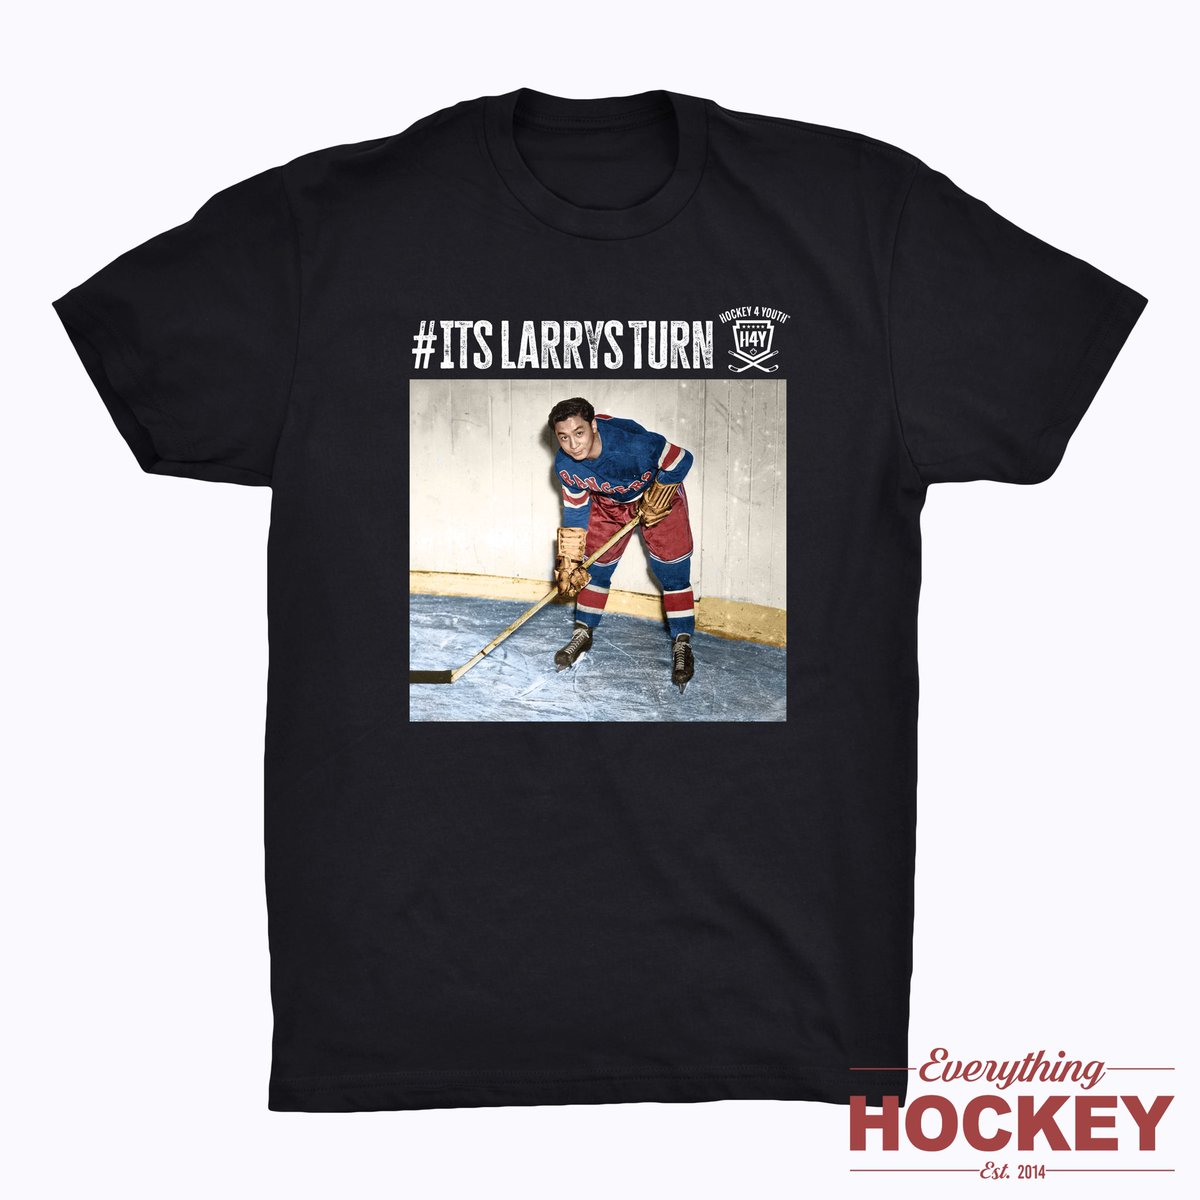 Clothing available🚨 #ItsLarrysTurn

Hockey Lace Hoodies & T-Shirts👇

everythinghockey.com/larrykwong